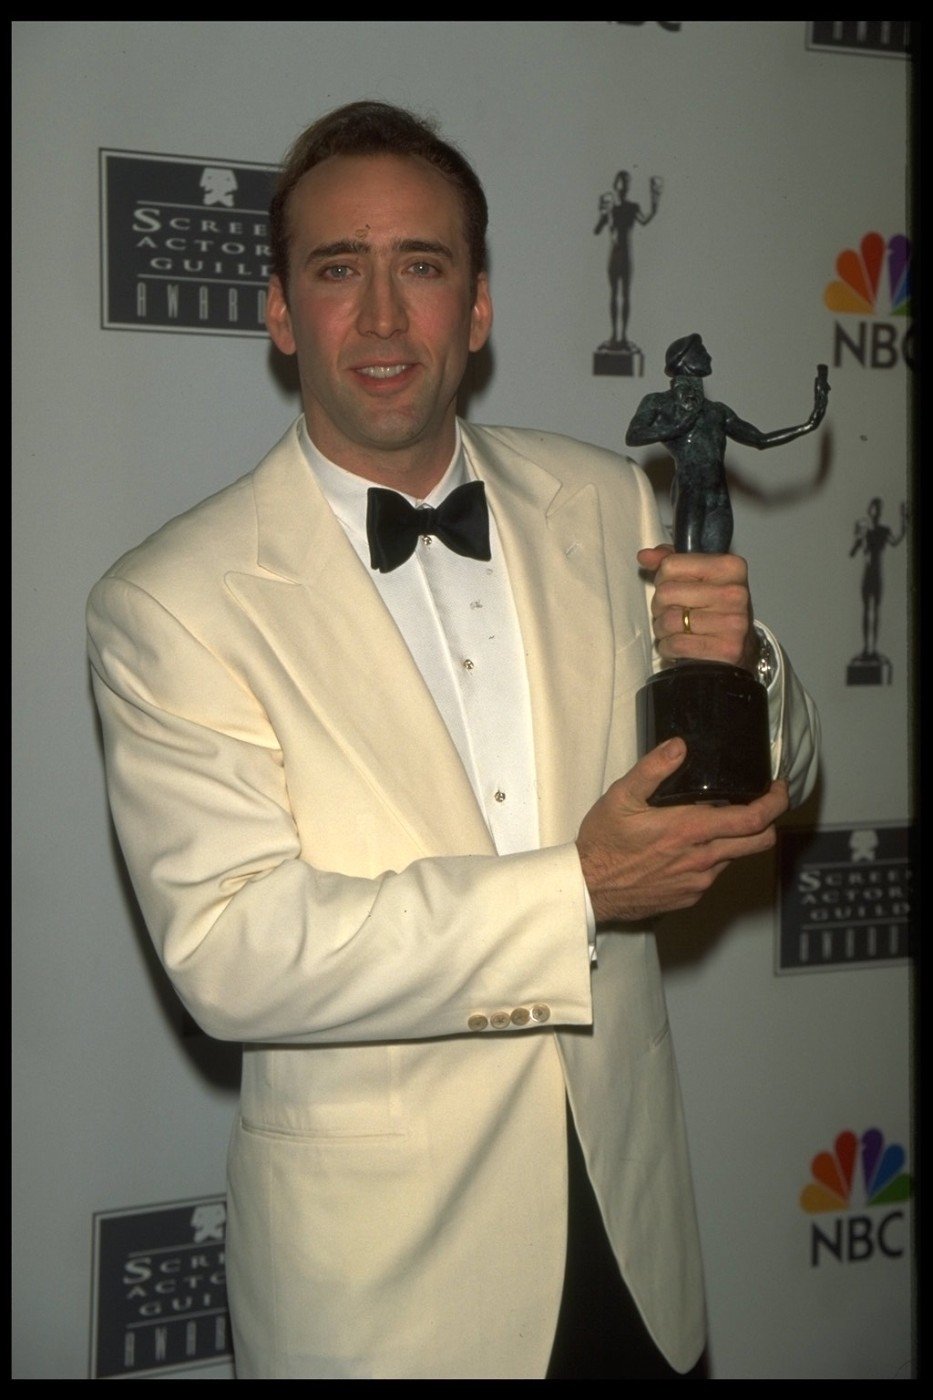 Herec Nicolas Cage získal za svoji hereckou kariéru mnoho cen